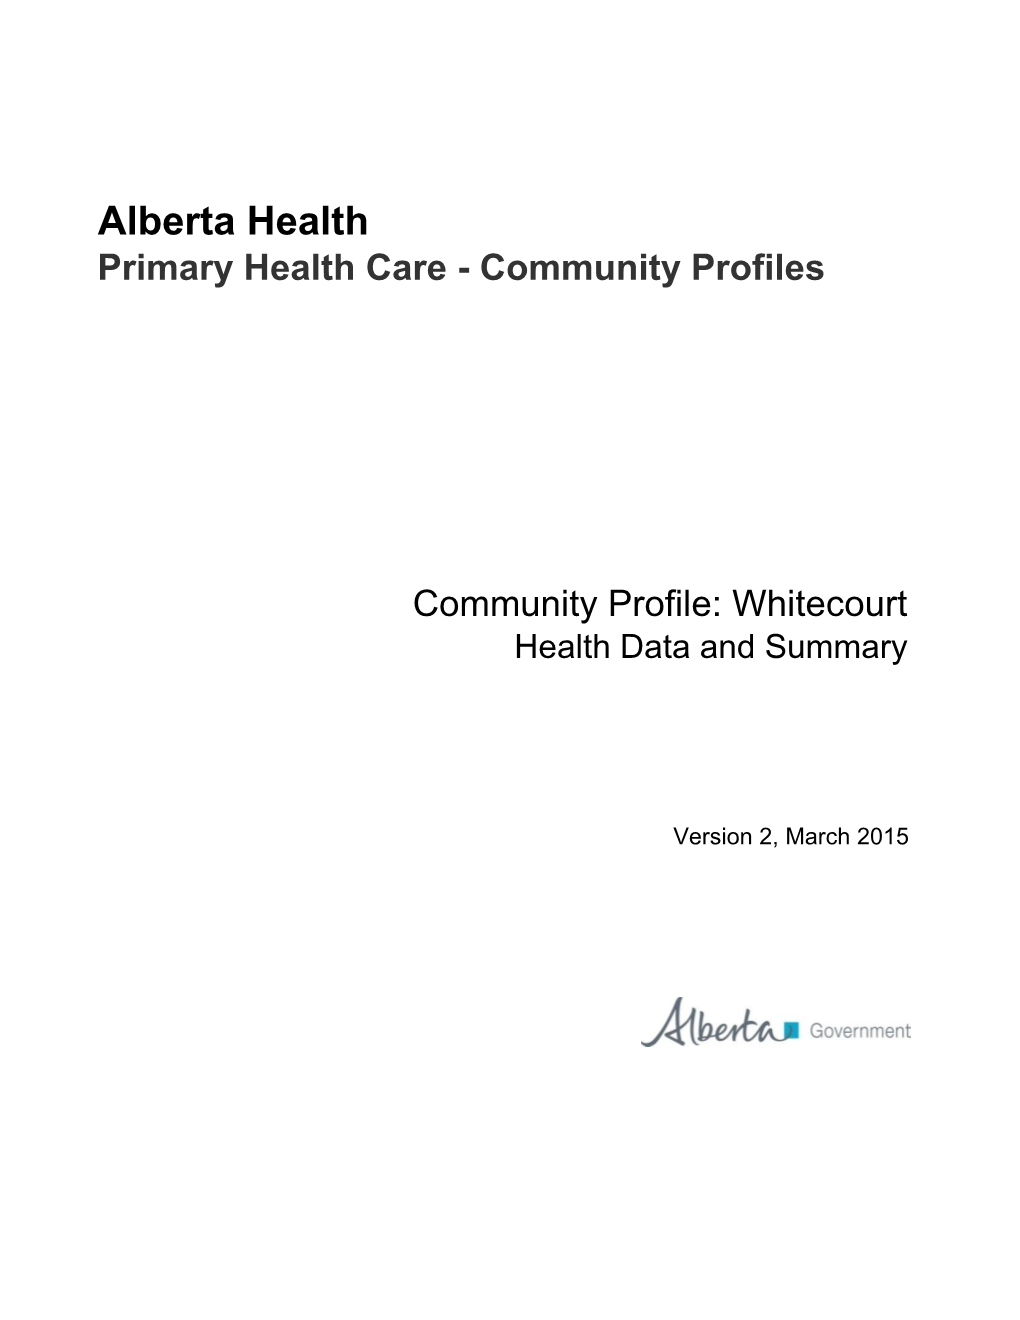 Whitecourt Health Data and Summary